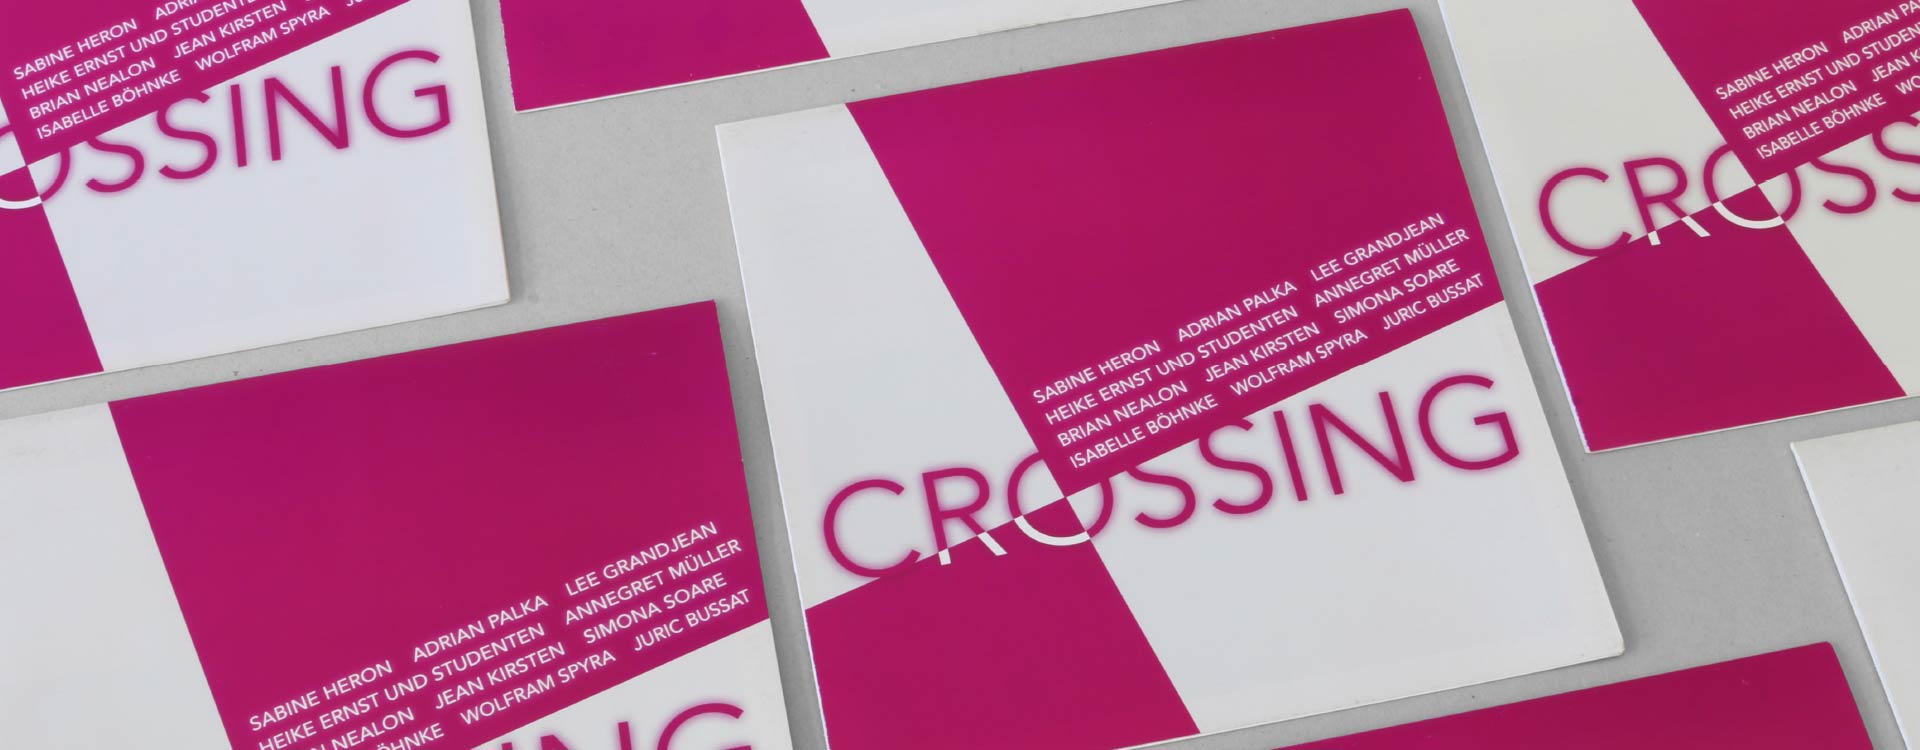 Leaflet for the exhibition Crossing in the Spreehöfen in Berlin Schöneweide; Design: Kattrin Richter | Graphic Design Studio